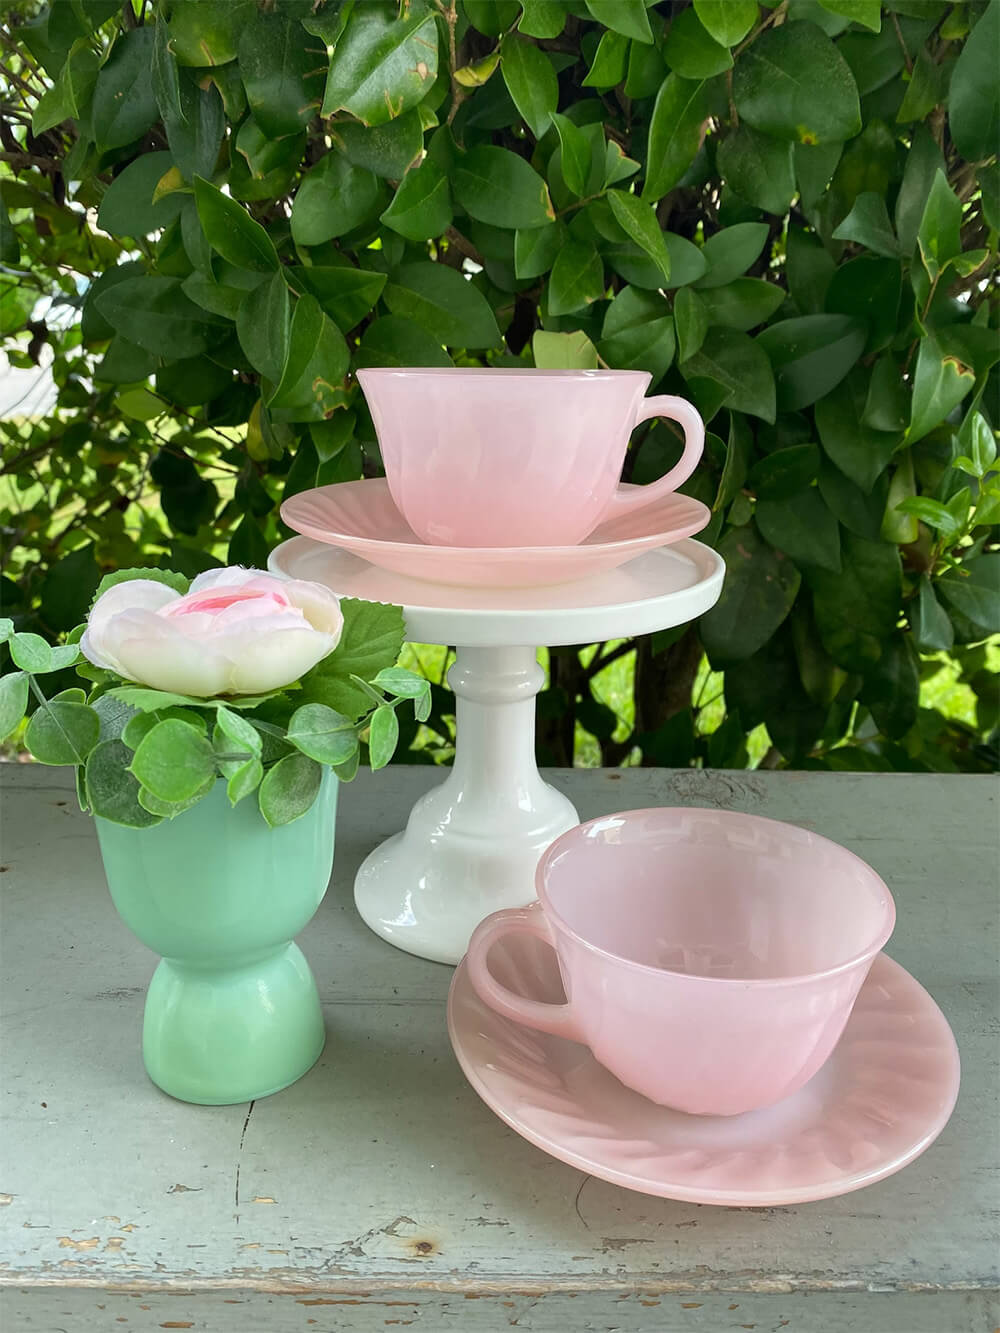 vintage pink teacup and saucer set